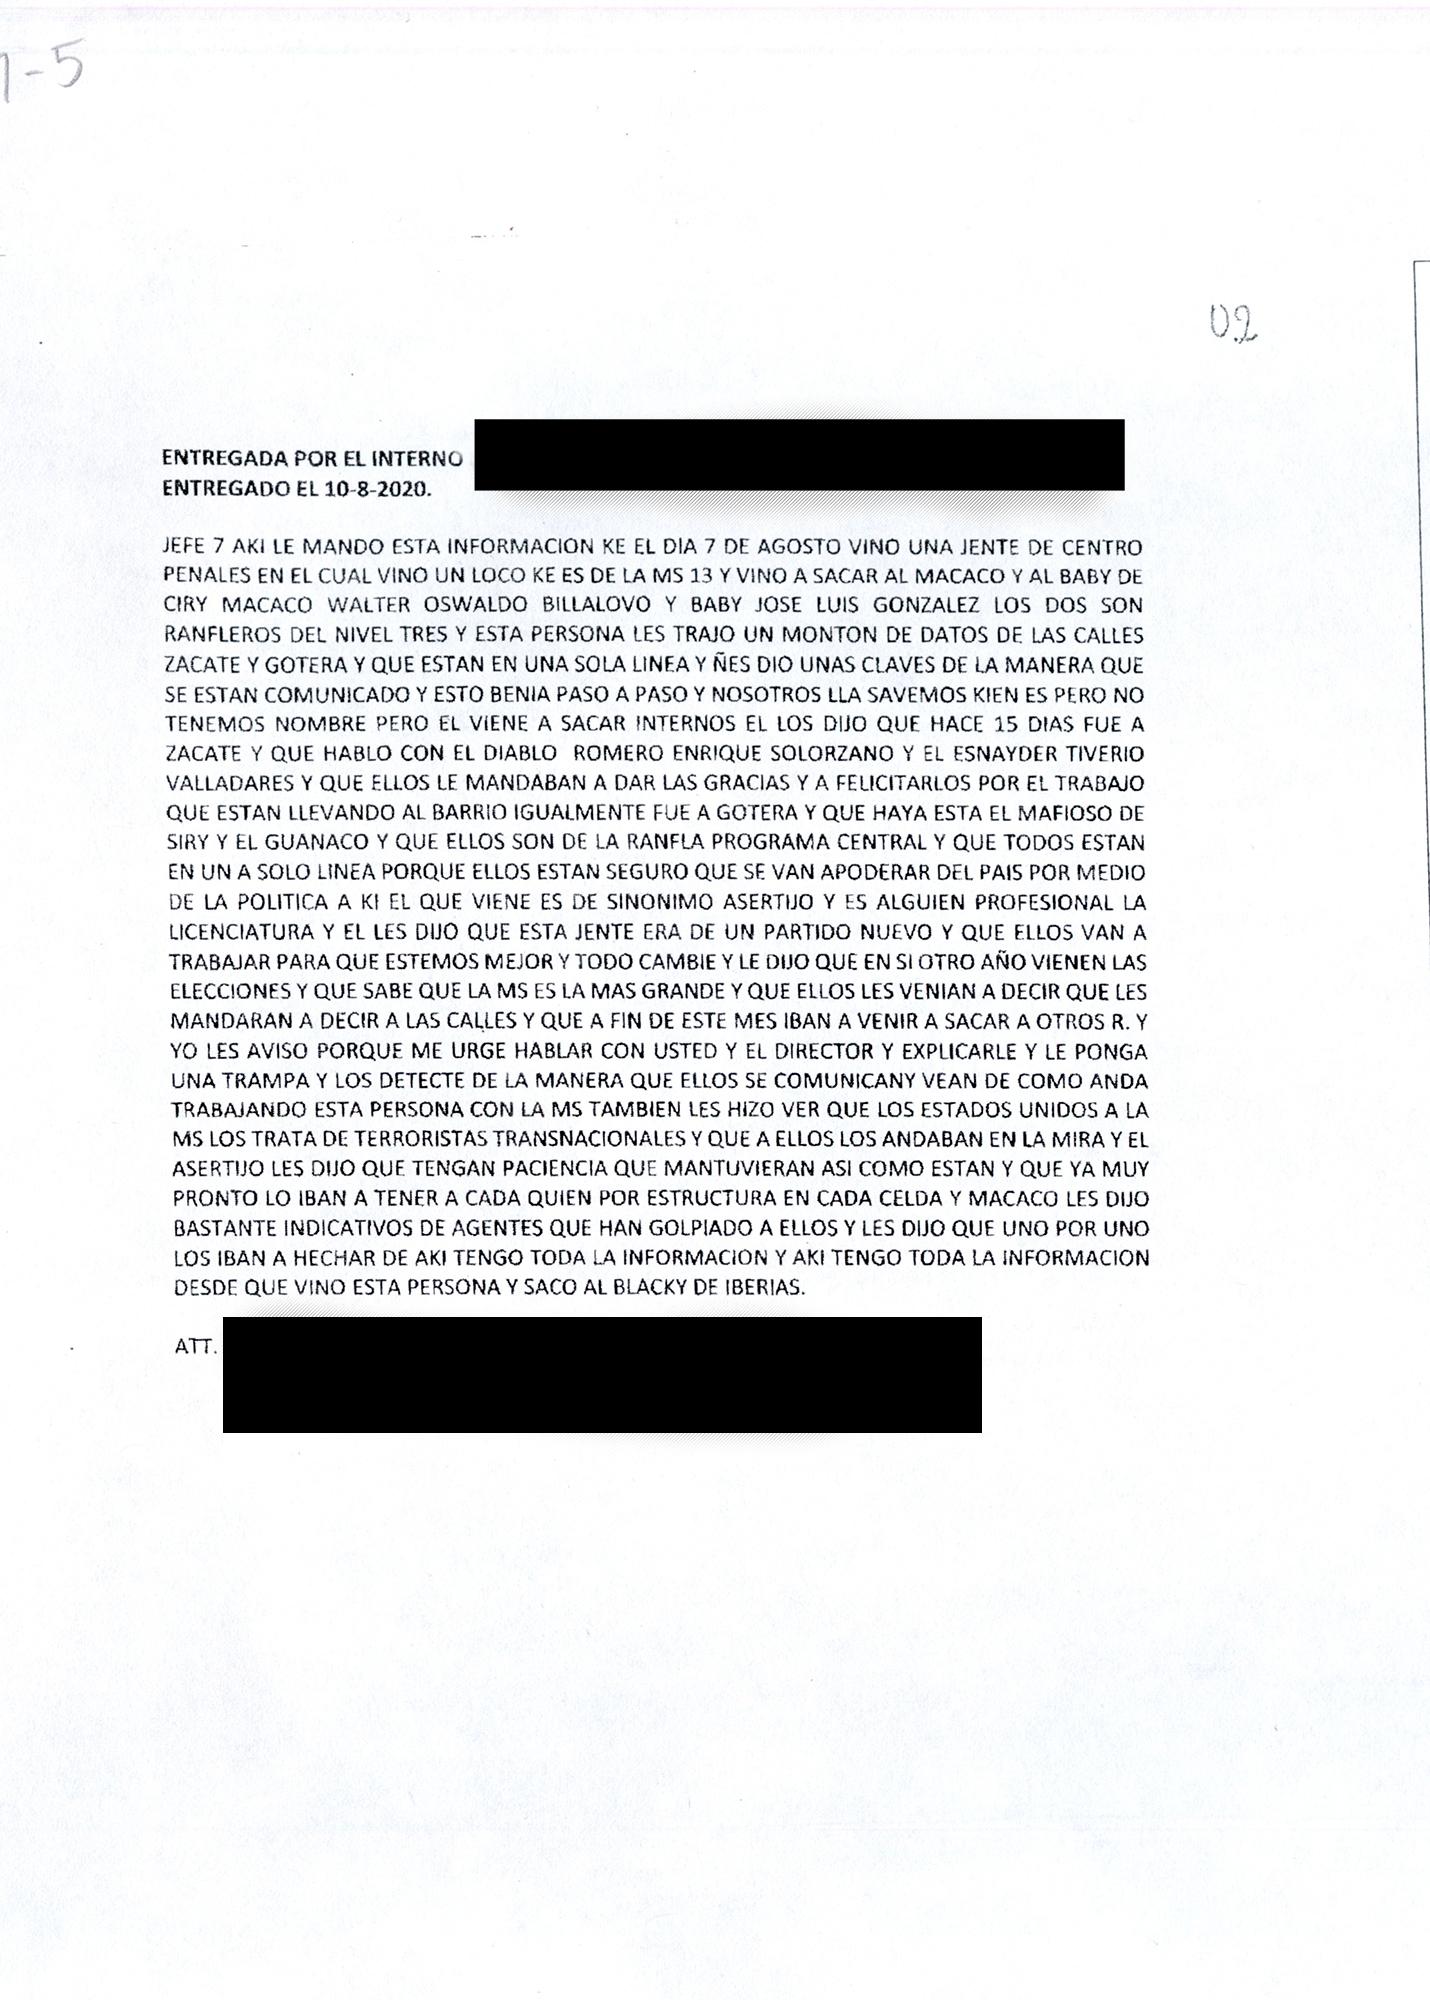 Transcripción de una de las wilas que hablan sobre lo ocurrido el día 7 de agosto en Izalco Fase III. La imagen corresponde a un documento de inteligencia penitenciaria que El Faro recibió junto al resto de documentos oficiales. 